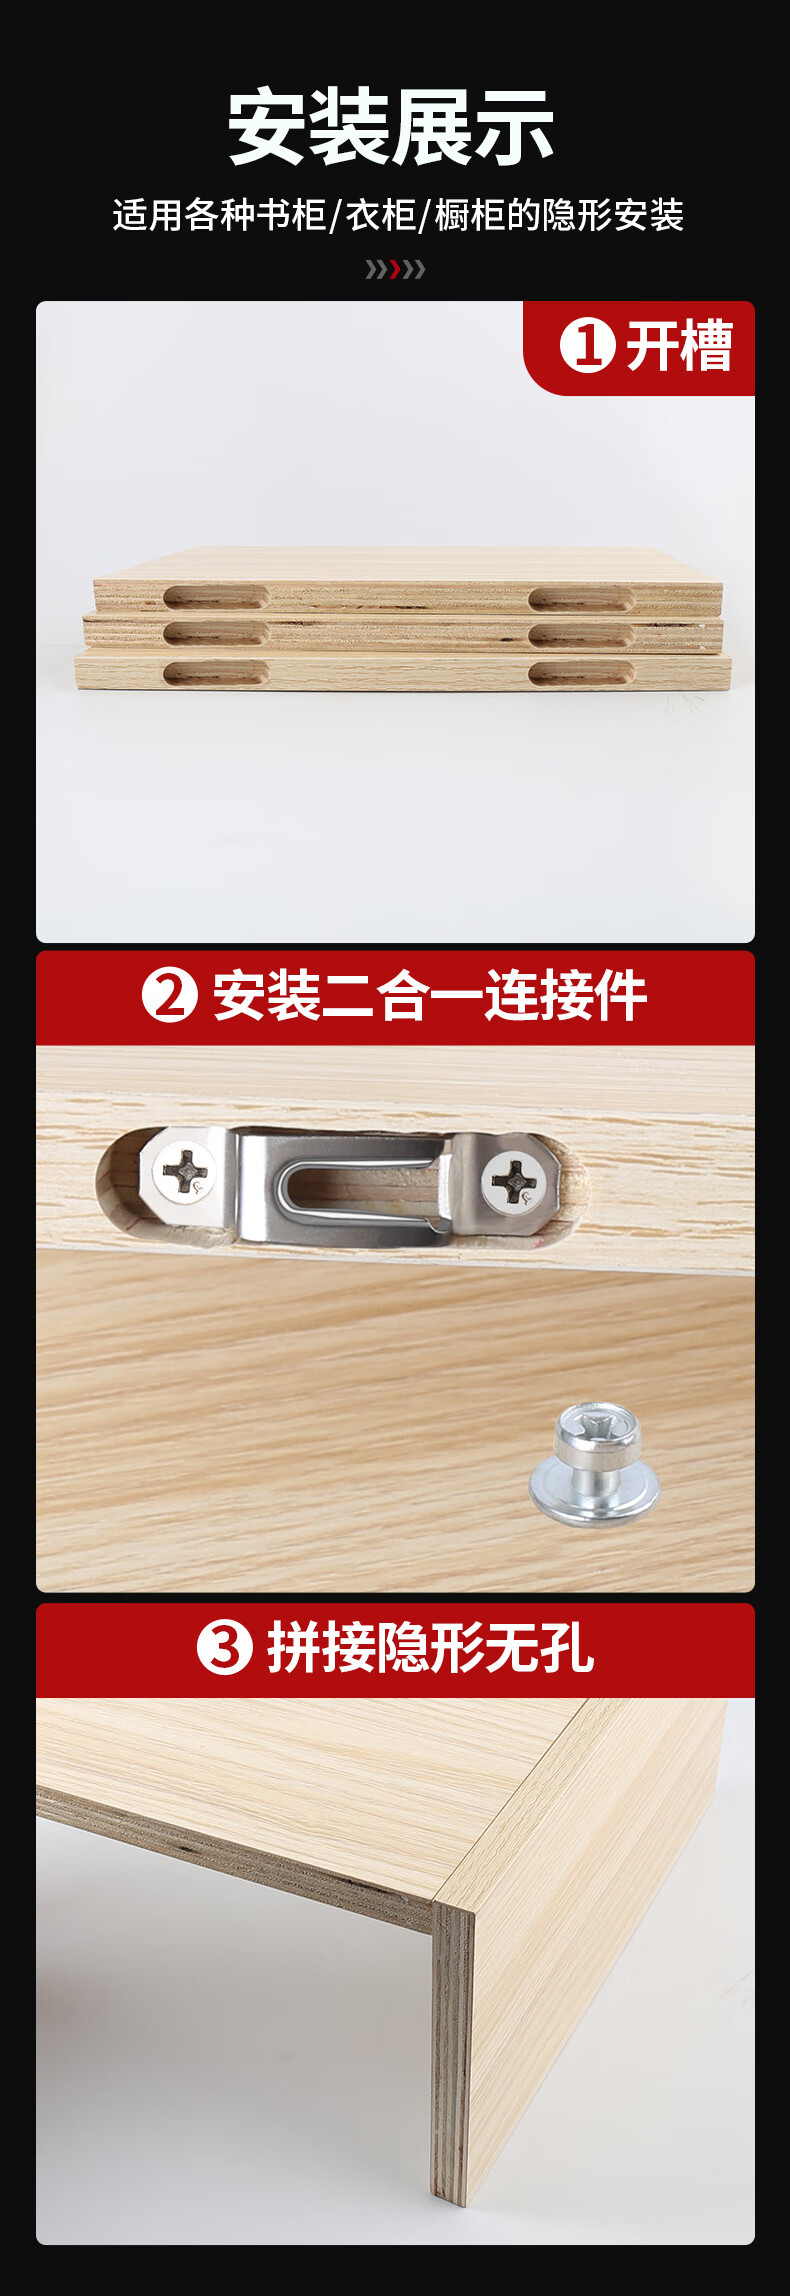 木工隐形二合一连接件扣件螺丝家具2合一衣柜配件柜子柜体开槽器